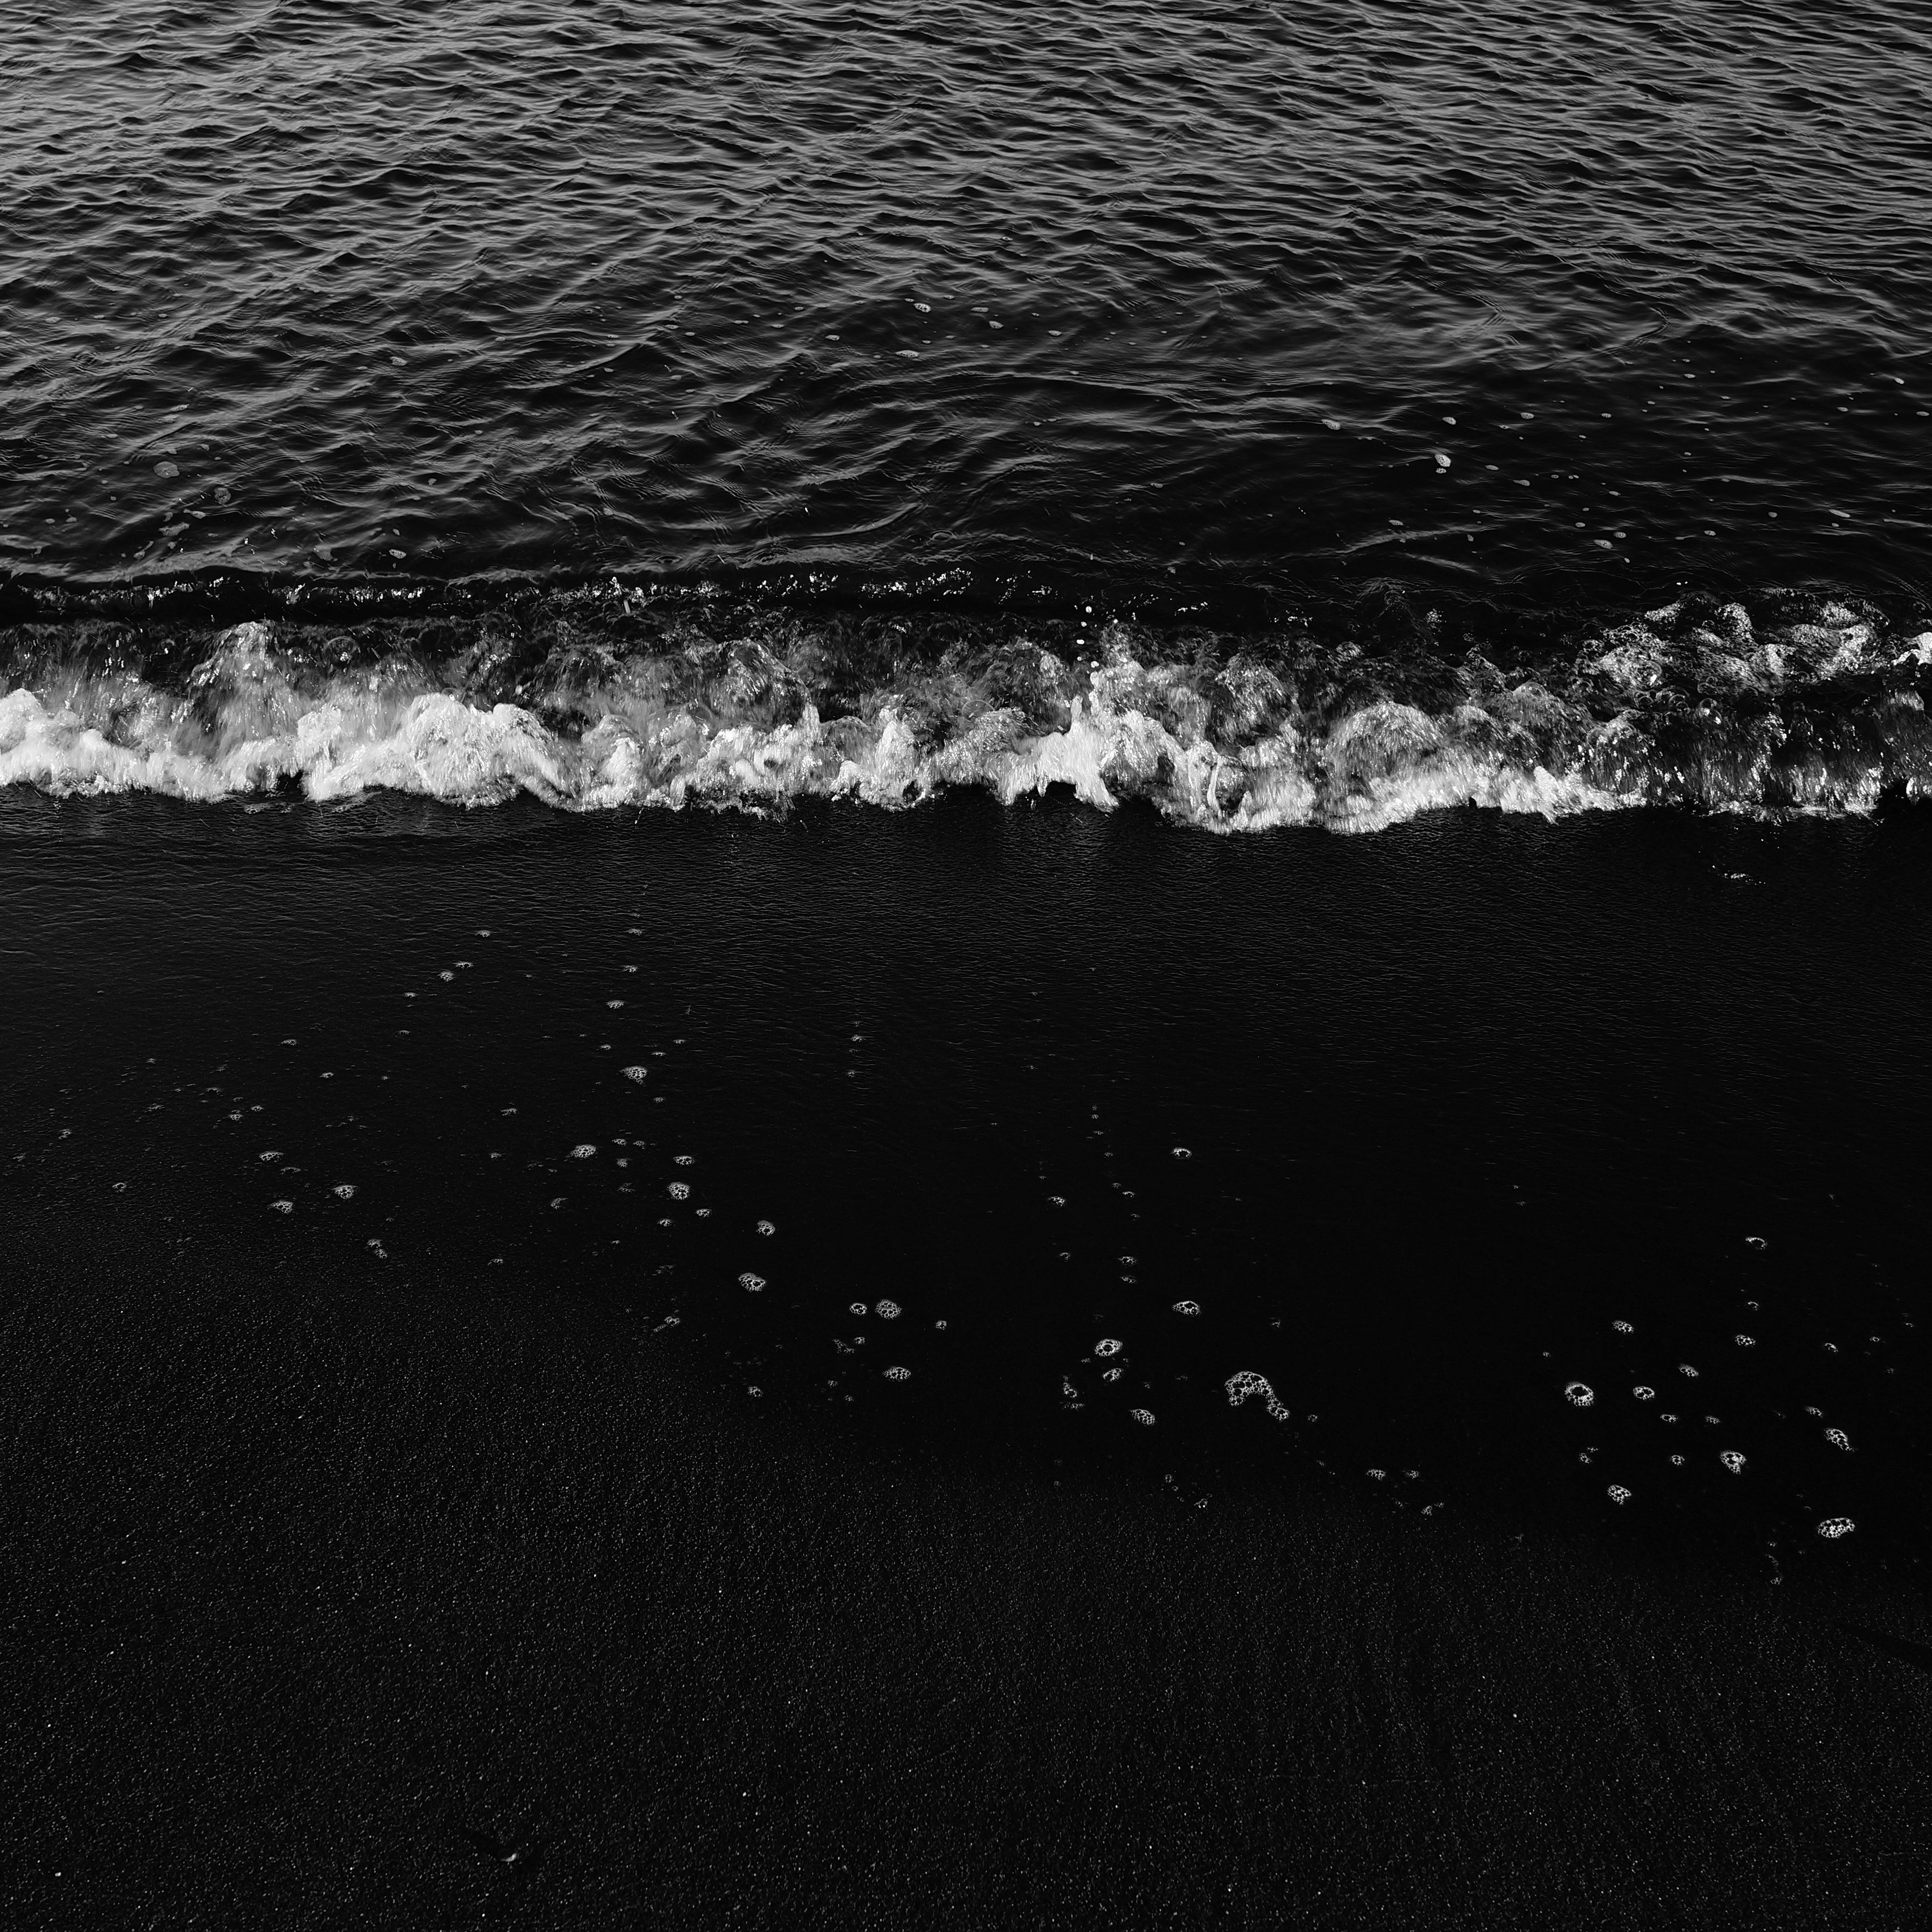 3415x3415 волны, чб, прибой, пена, песок, темный, вода, море обои ipad pro ...